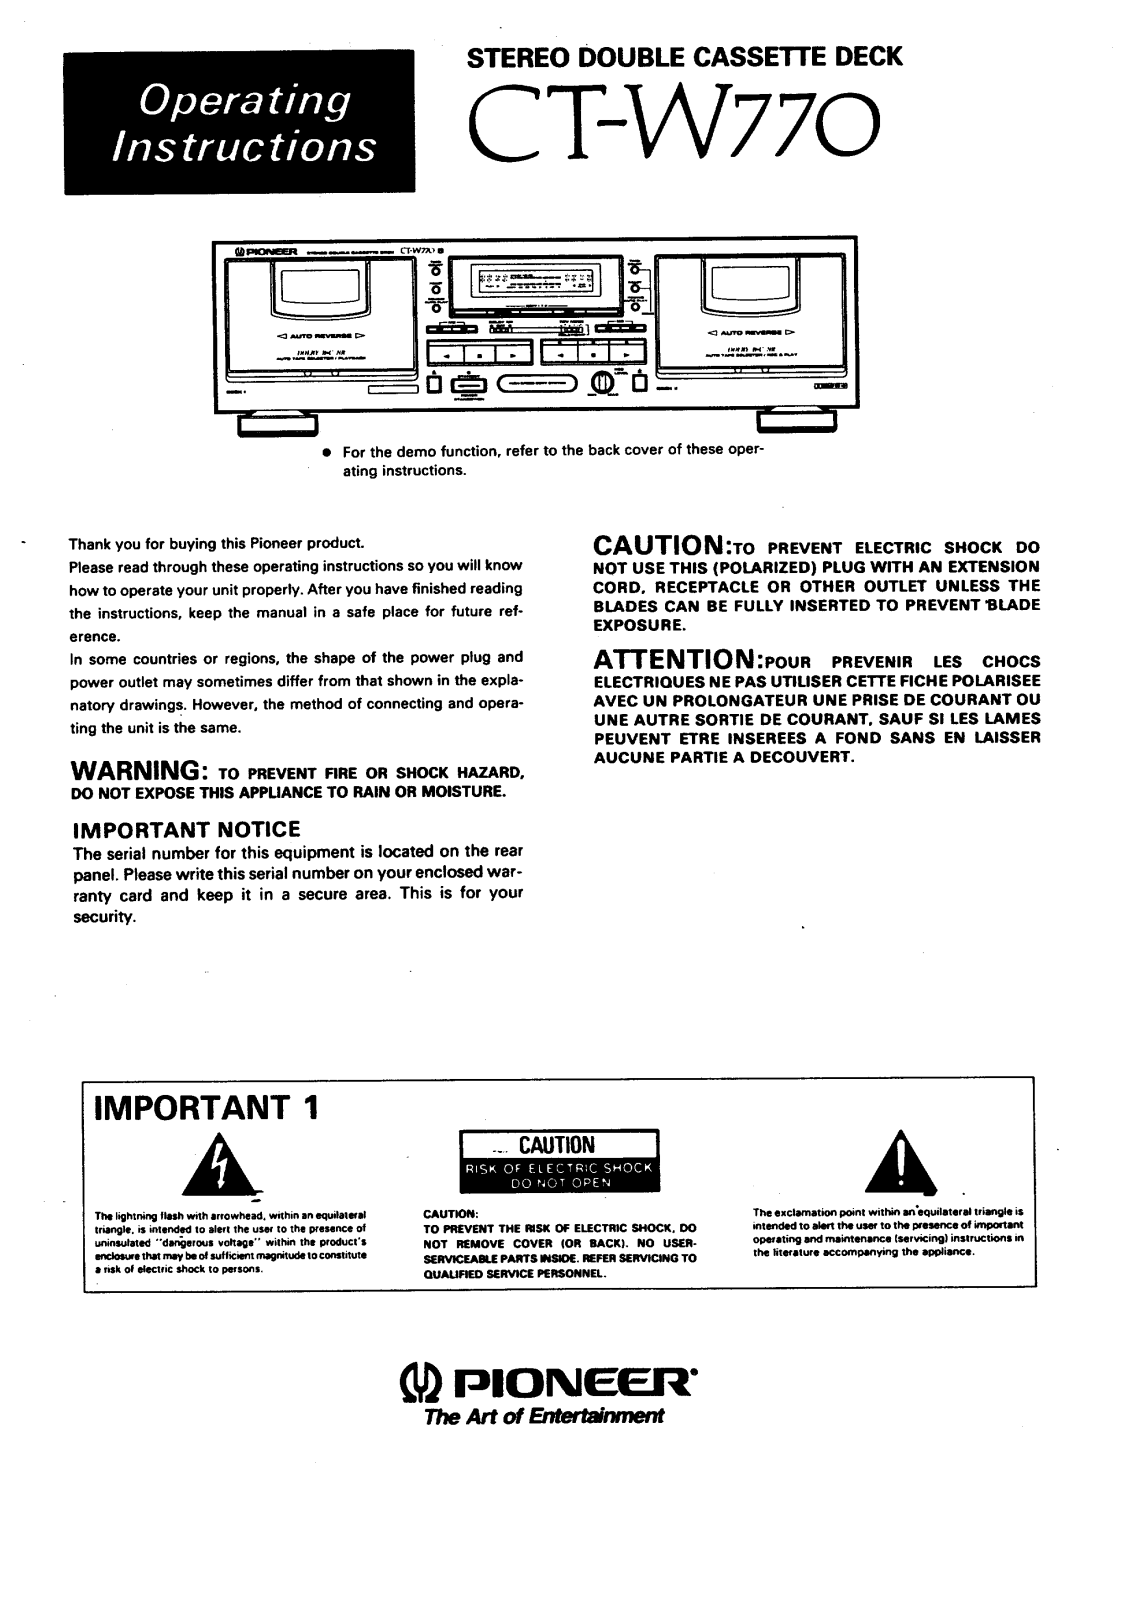 Pioneer CT-W770 Owner’s Manual